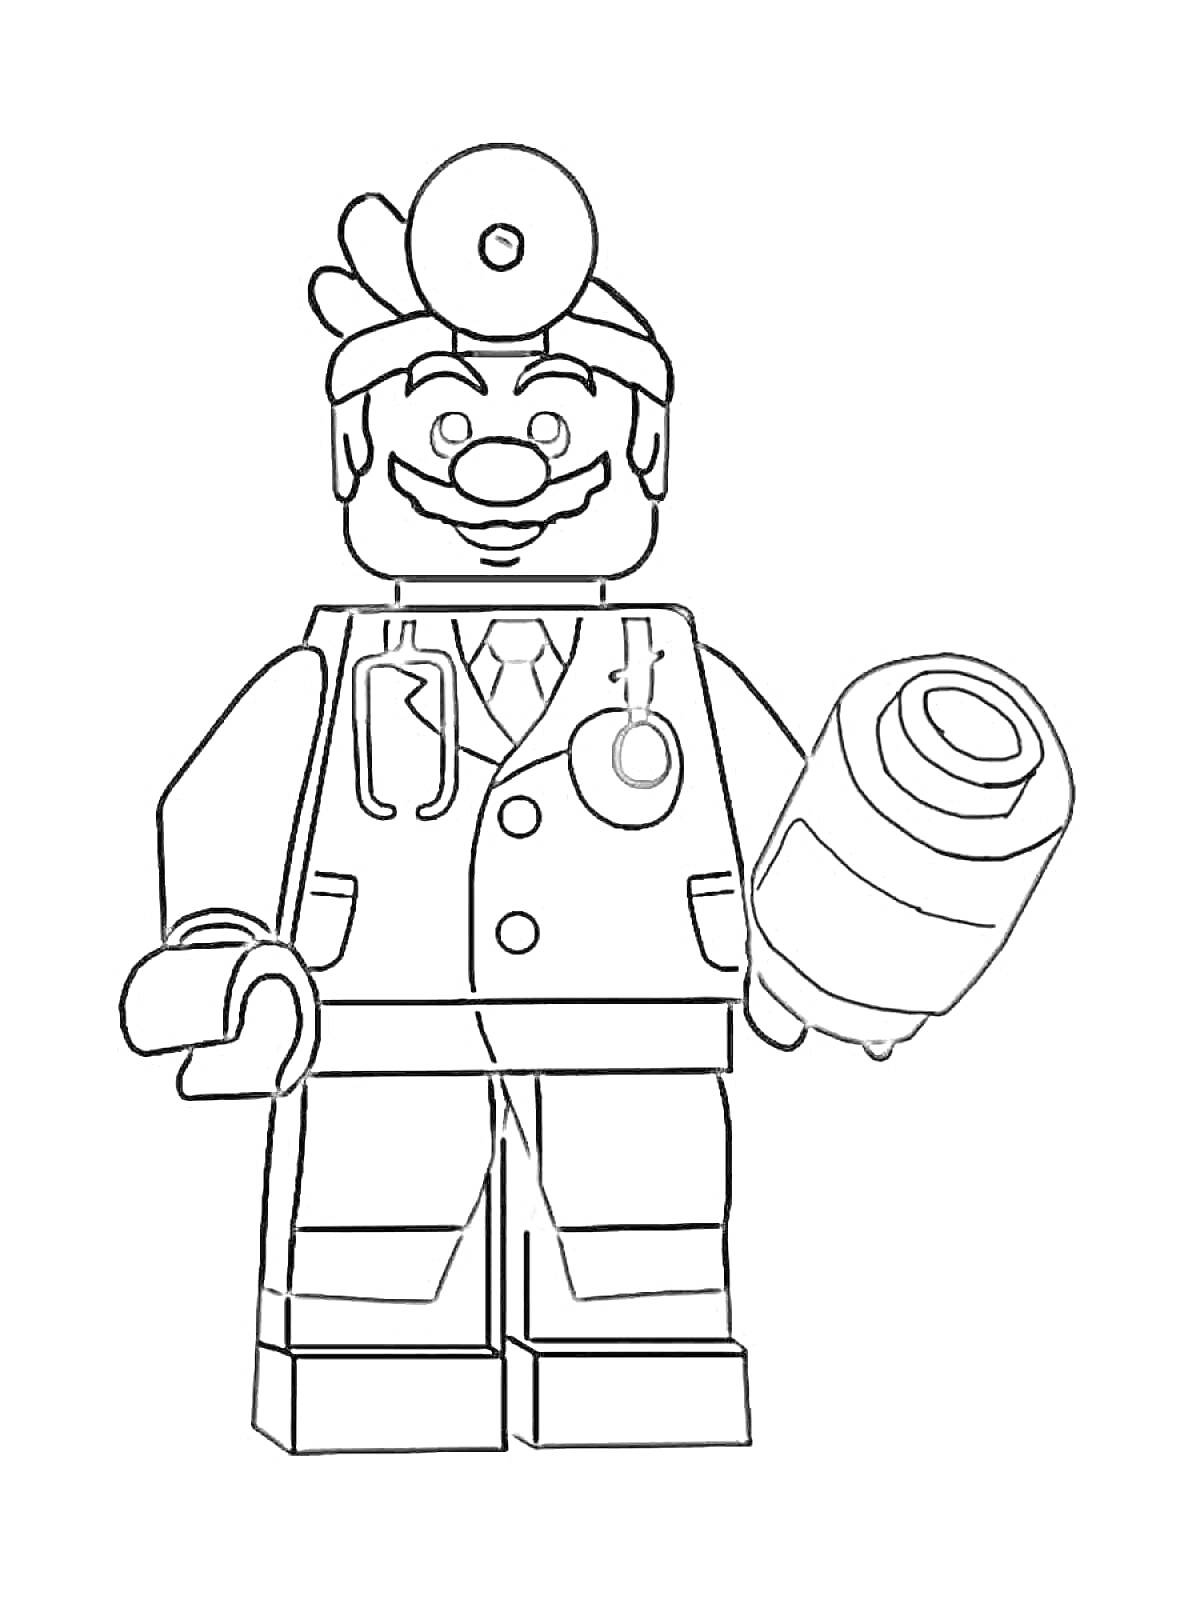 Раскраска Доктор Супер Марио в формате лего, с фонендоскопом и лекарством в руках